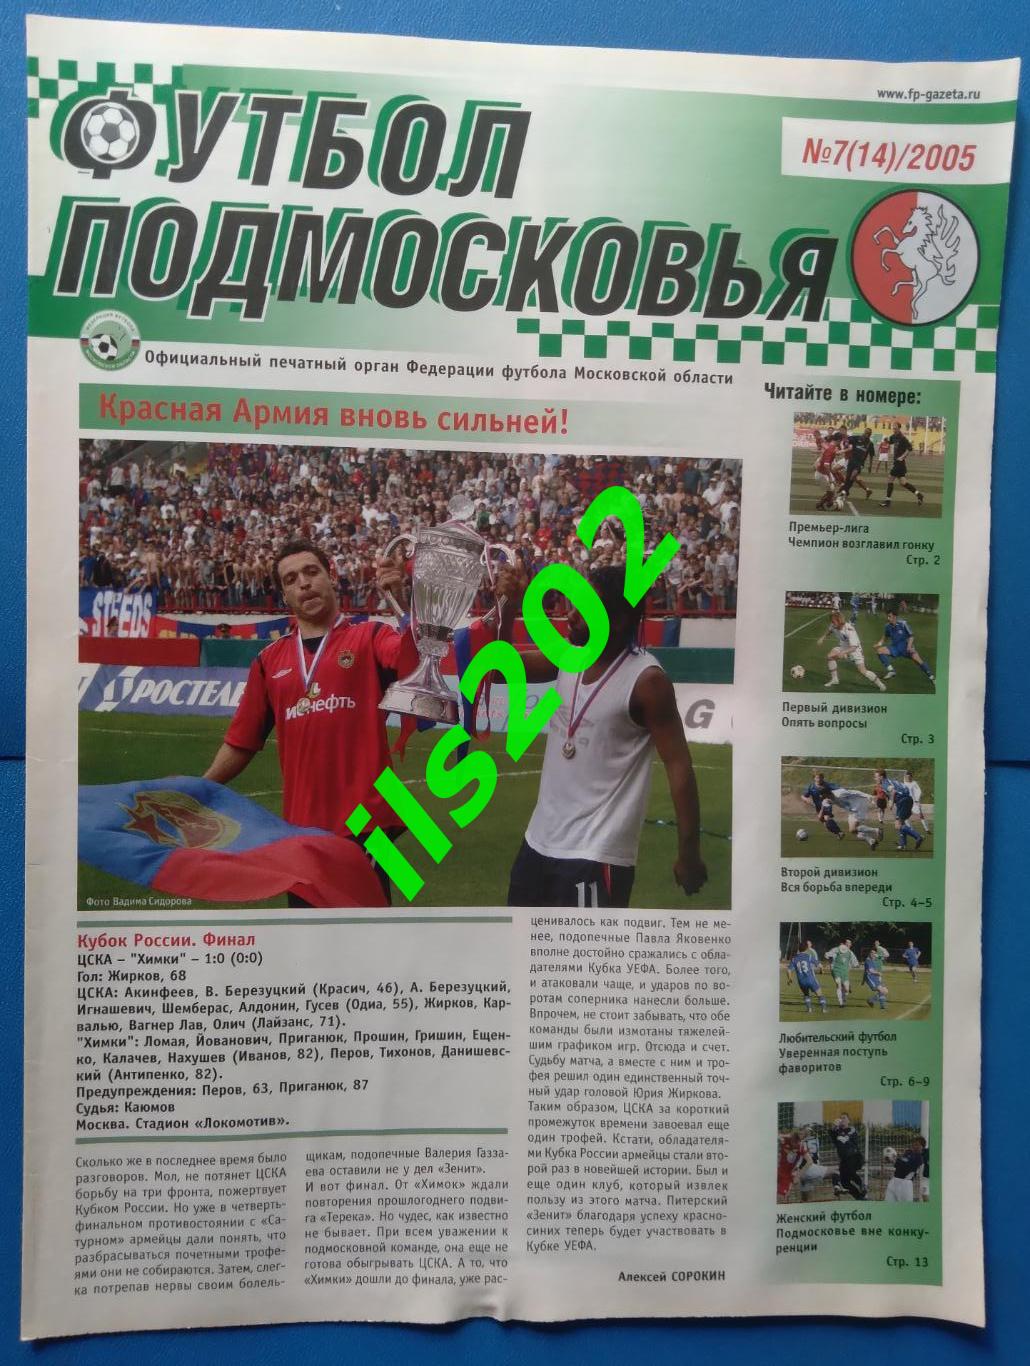 газета Футбол Подмосковья № 7(14)/2005 (подробнее- в описании)